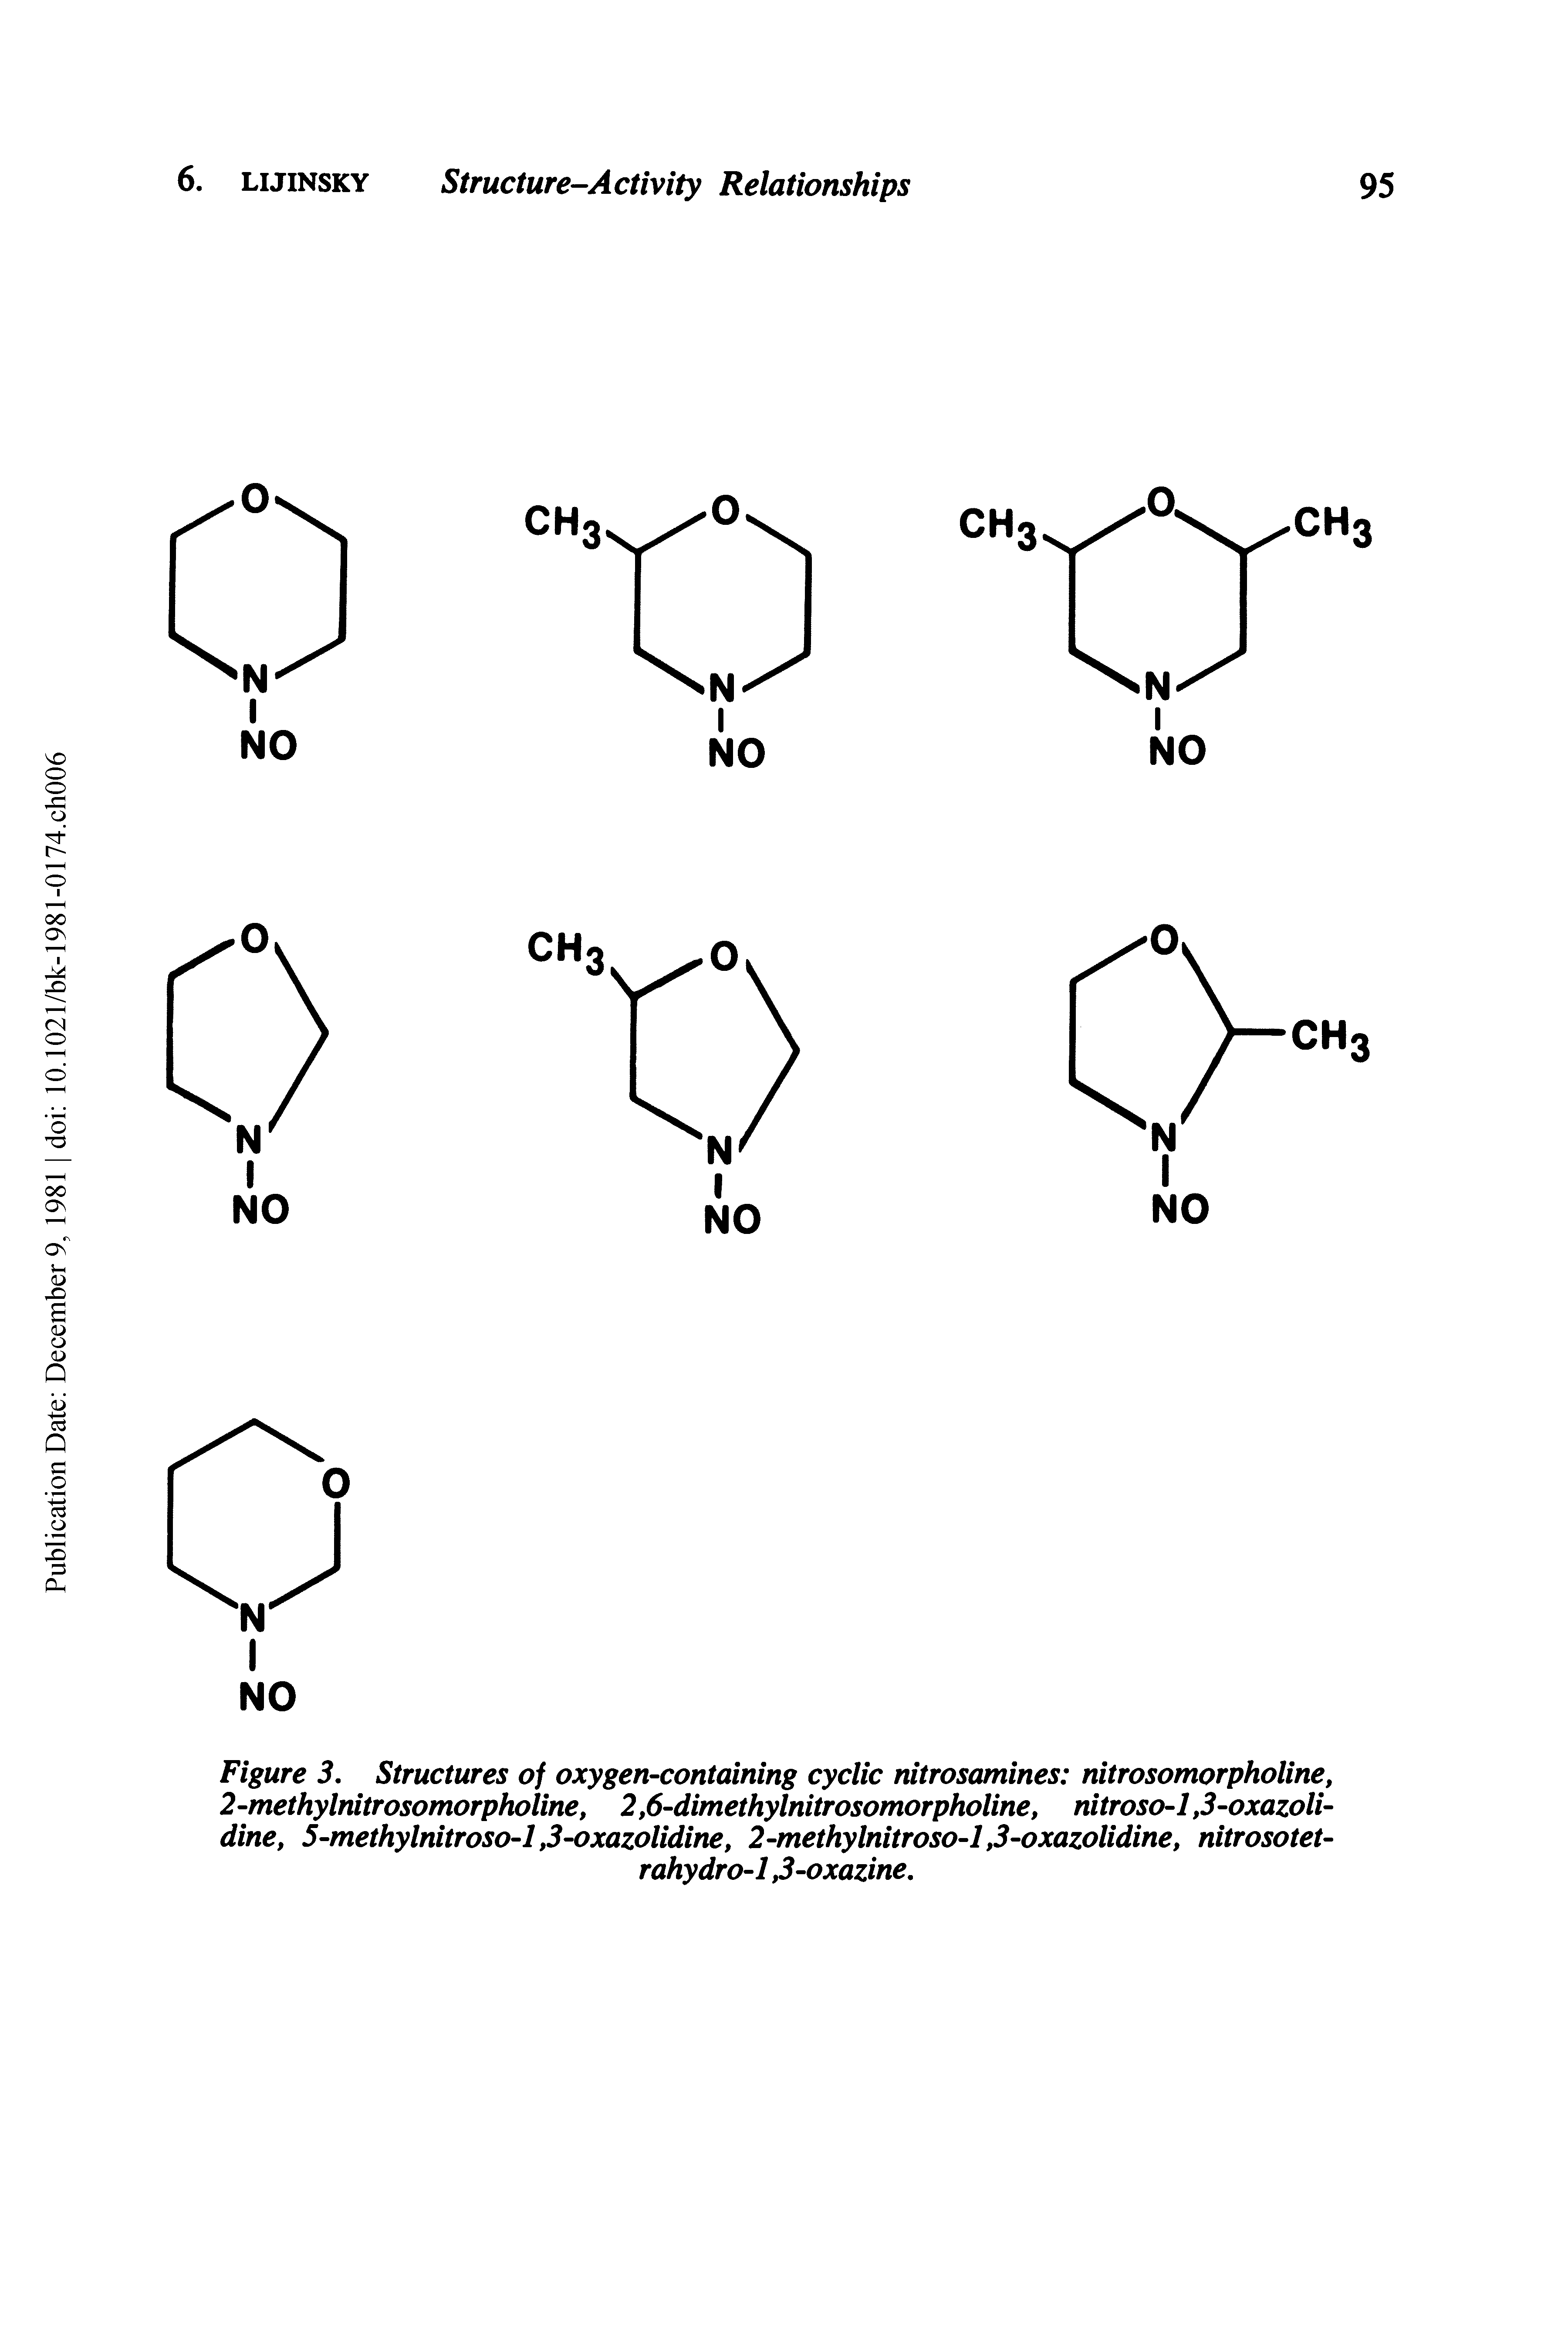 Figure 3, Structures of oxygen-containing cyclic nitrosamines nitrosomorpholine, 2-methylnitrosomorpholine, 2,6-dimethylnitrosomorpholine, nitroso-1,3-oxazoli-dine, 5-methylnitroso-l,3-oxazolidine, 2-methylnitroso-l,3-oxazolidine, nitrosotet-...